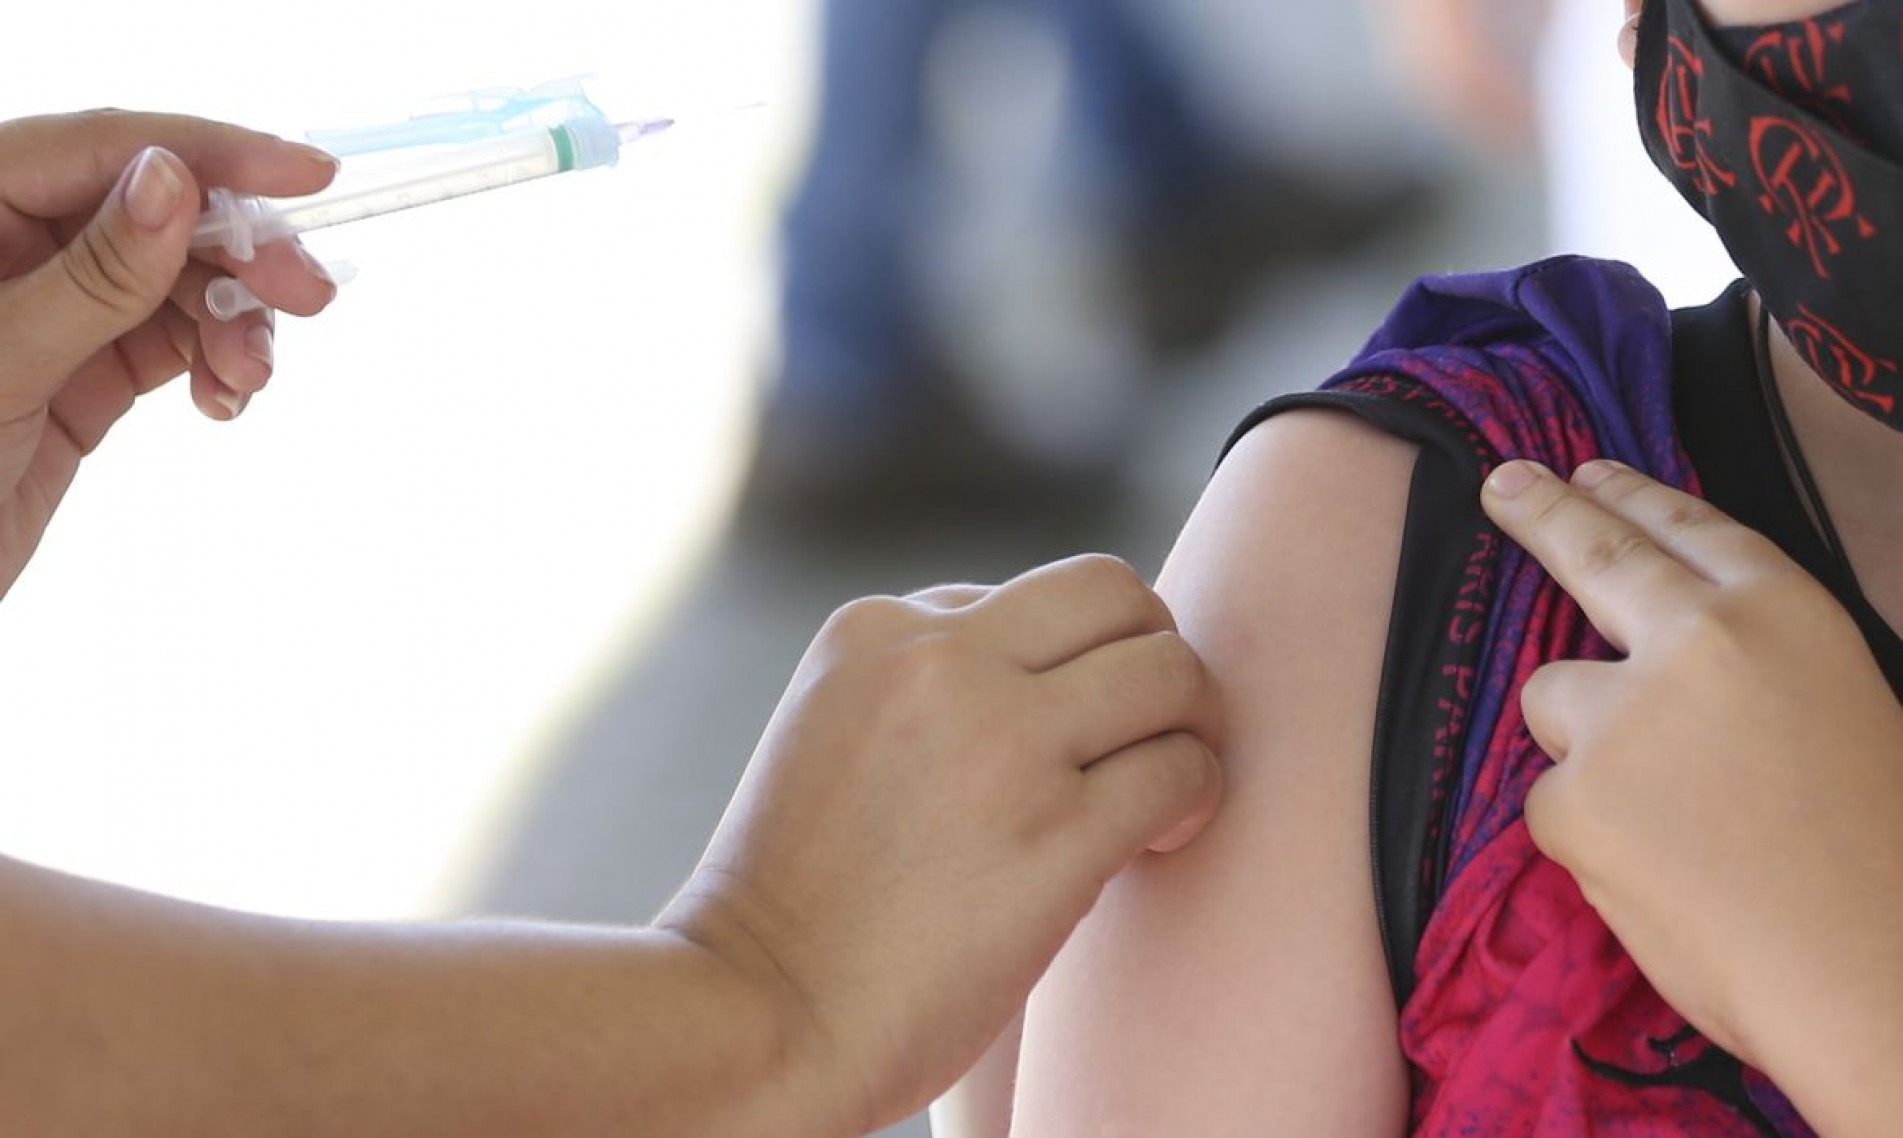  Vacina....o de crian..as contra a covid-19  na UBS 5 de Taguatinga Sul
    